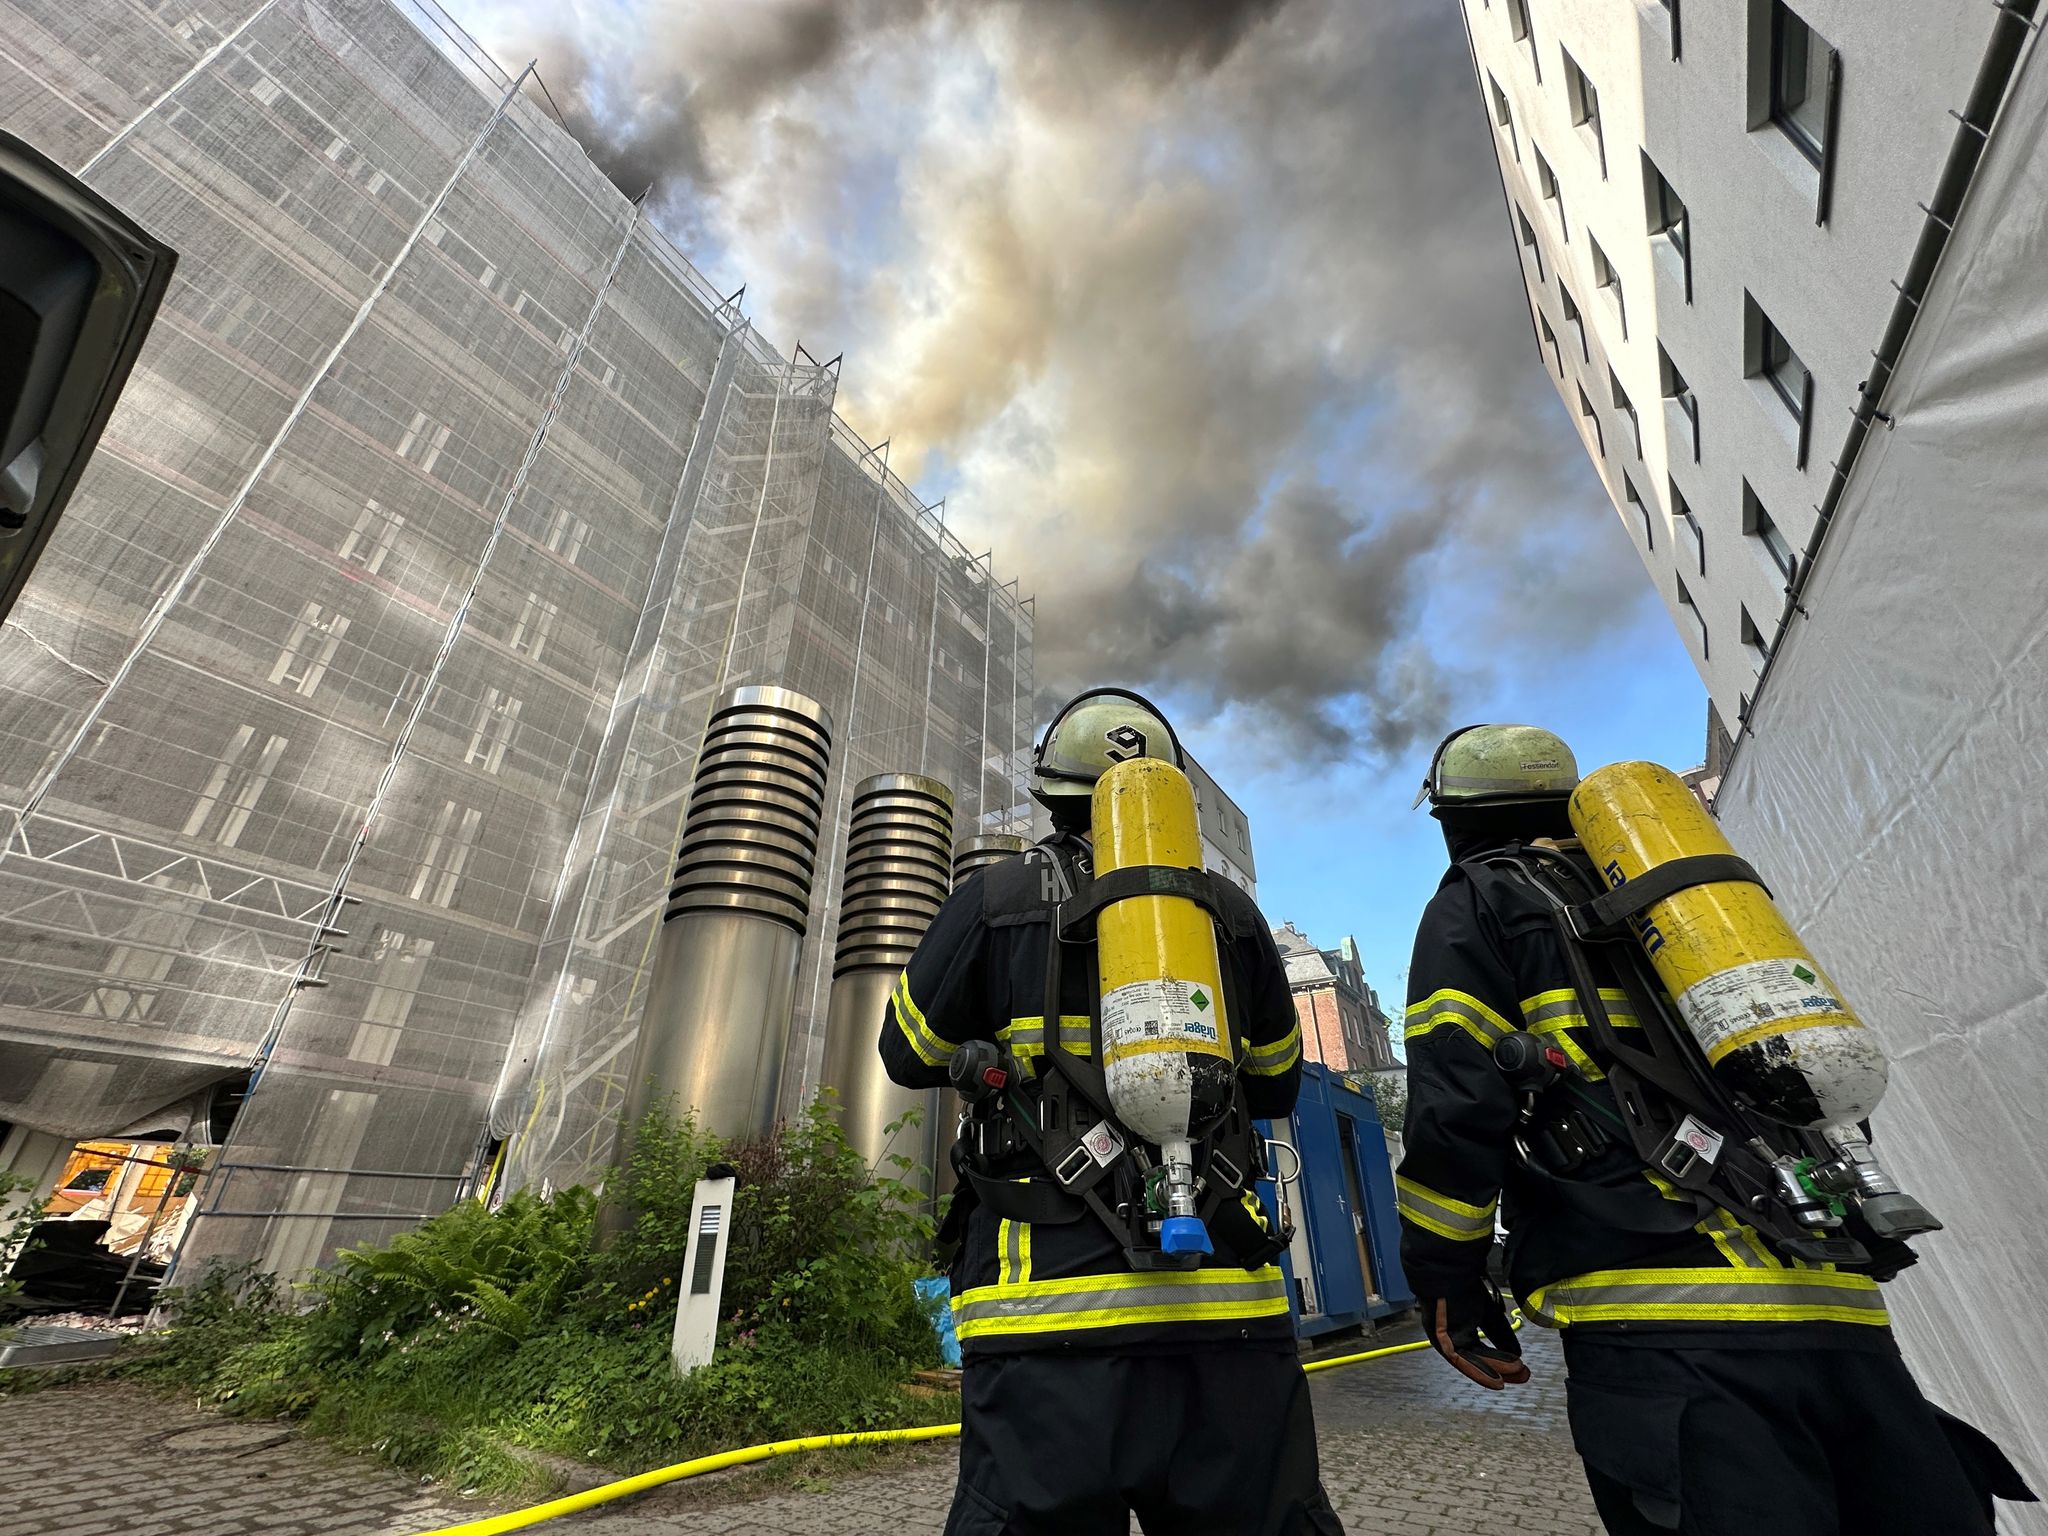 dachstuhl in brand: hotels in hamburger innenstadt evakuiert